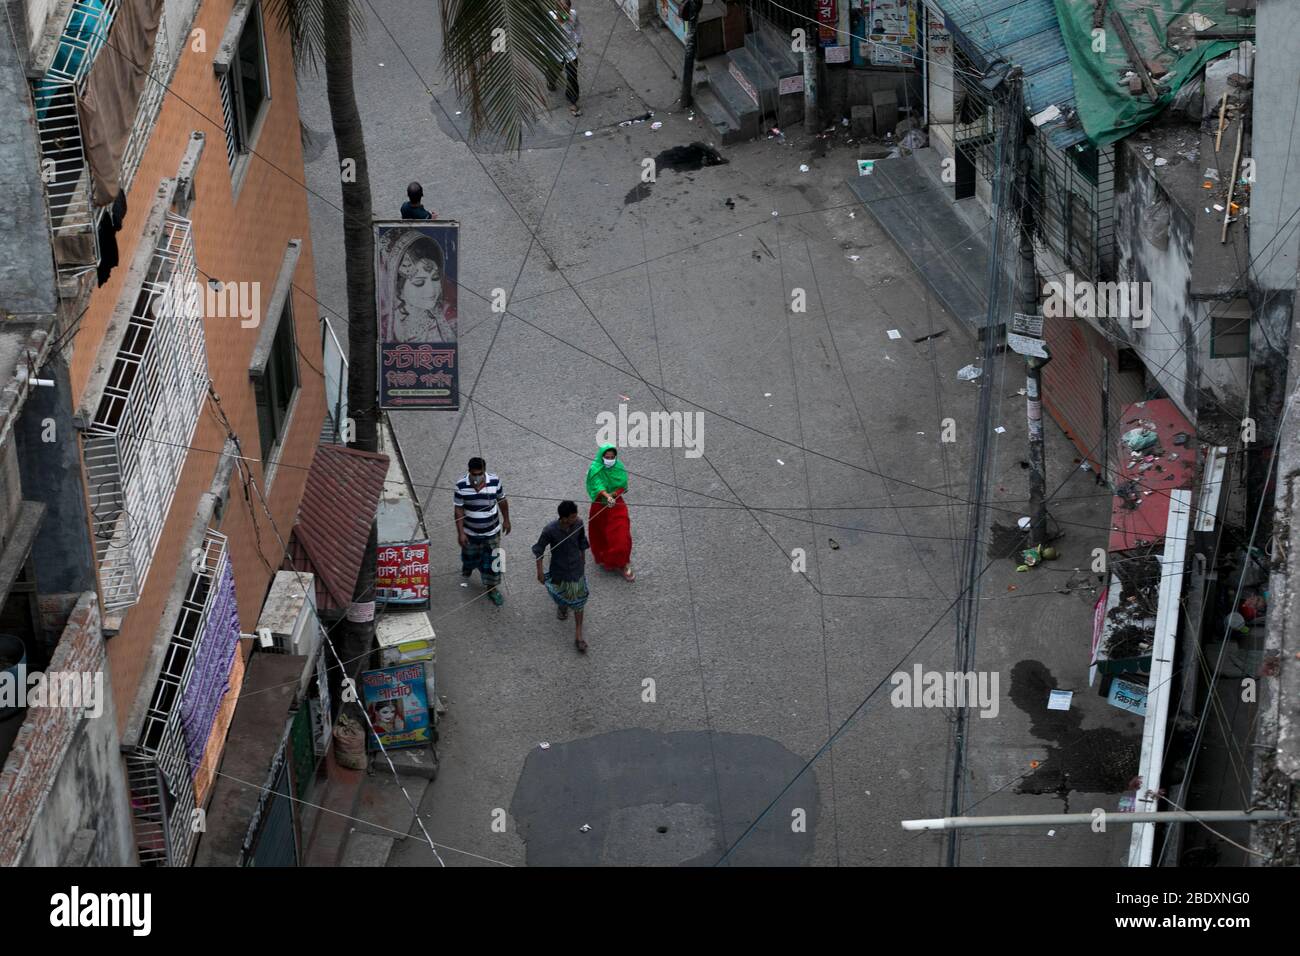 DHAKA, BANGLADESH - APRILE 10: Il popolo del Bangladesh cammina per strada durante la chiusura a chiave imposta dal governo come misura preventiva contro il corone COVID-19 Foto Stock